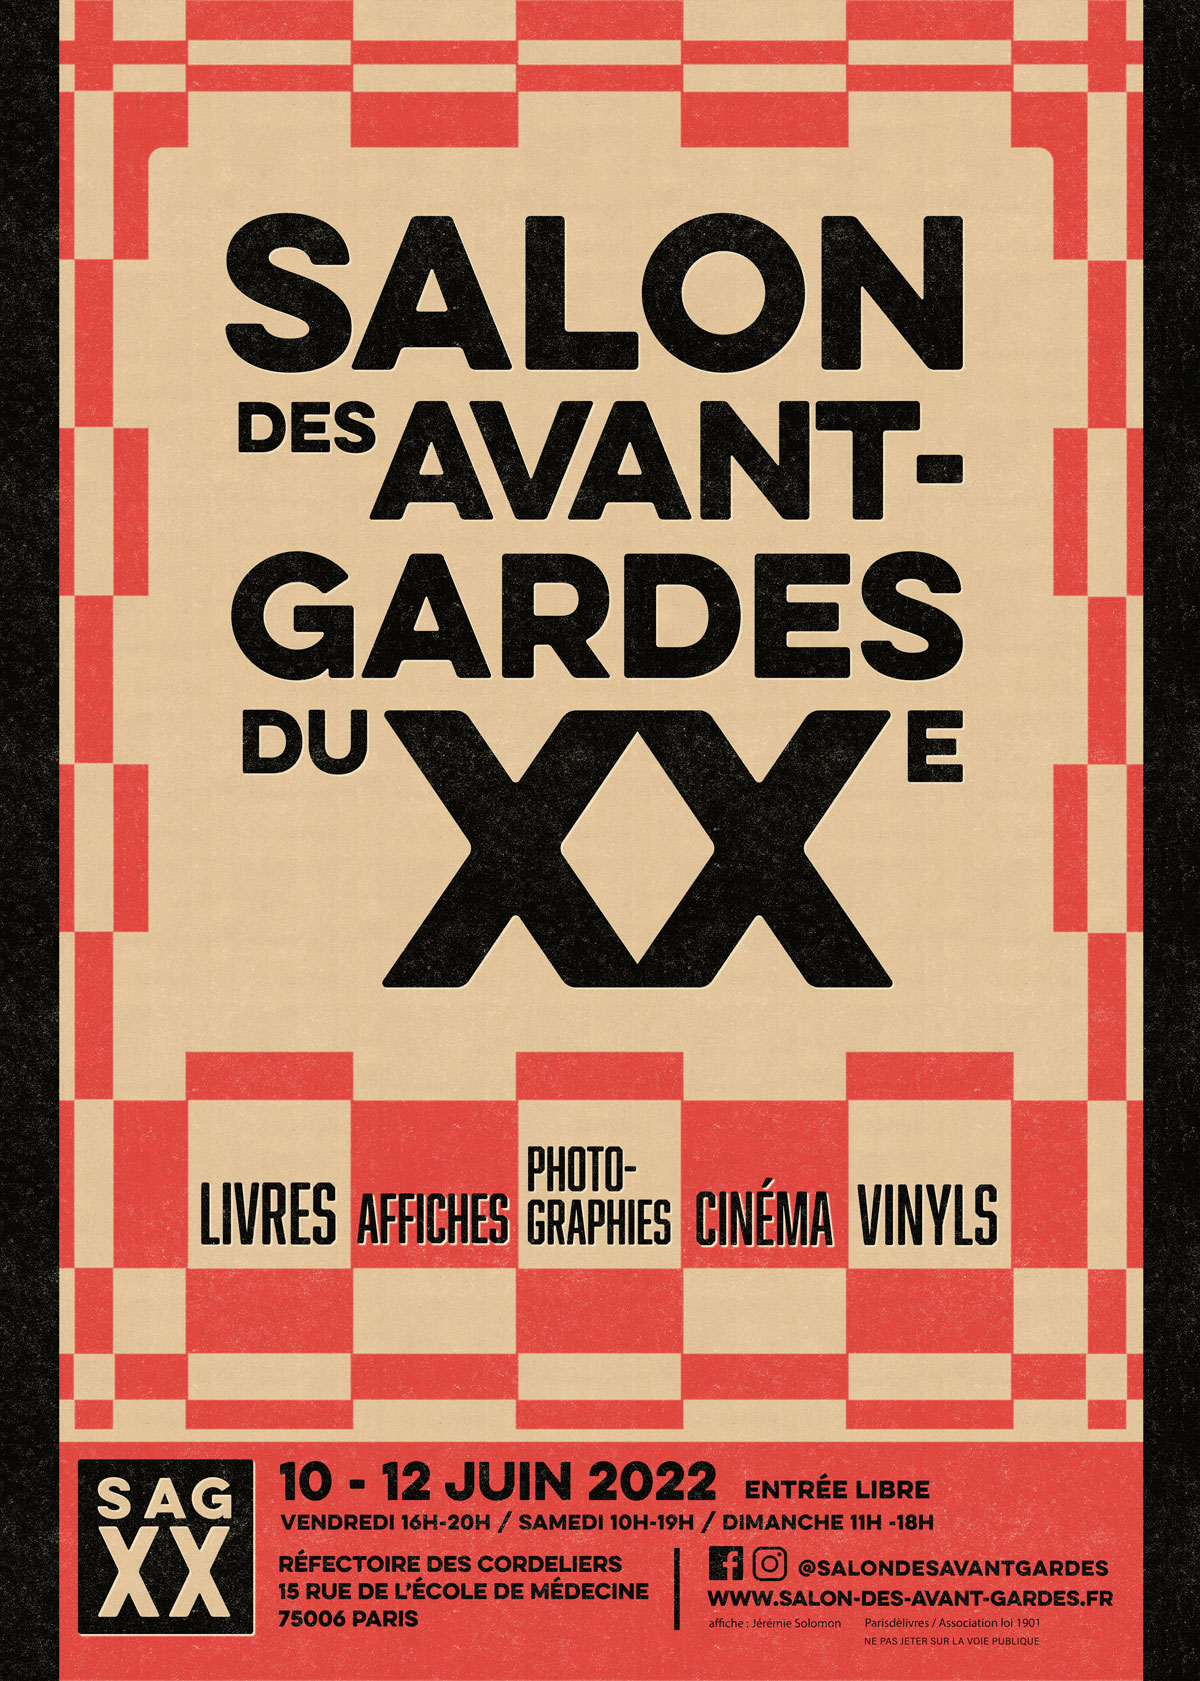 SAGXX - Salon des Avant-gardes du XXe siècle - Paris